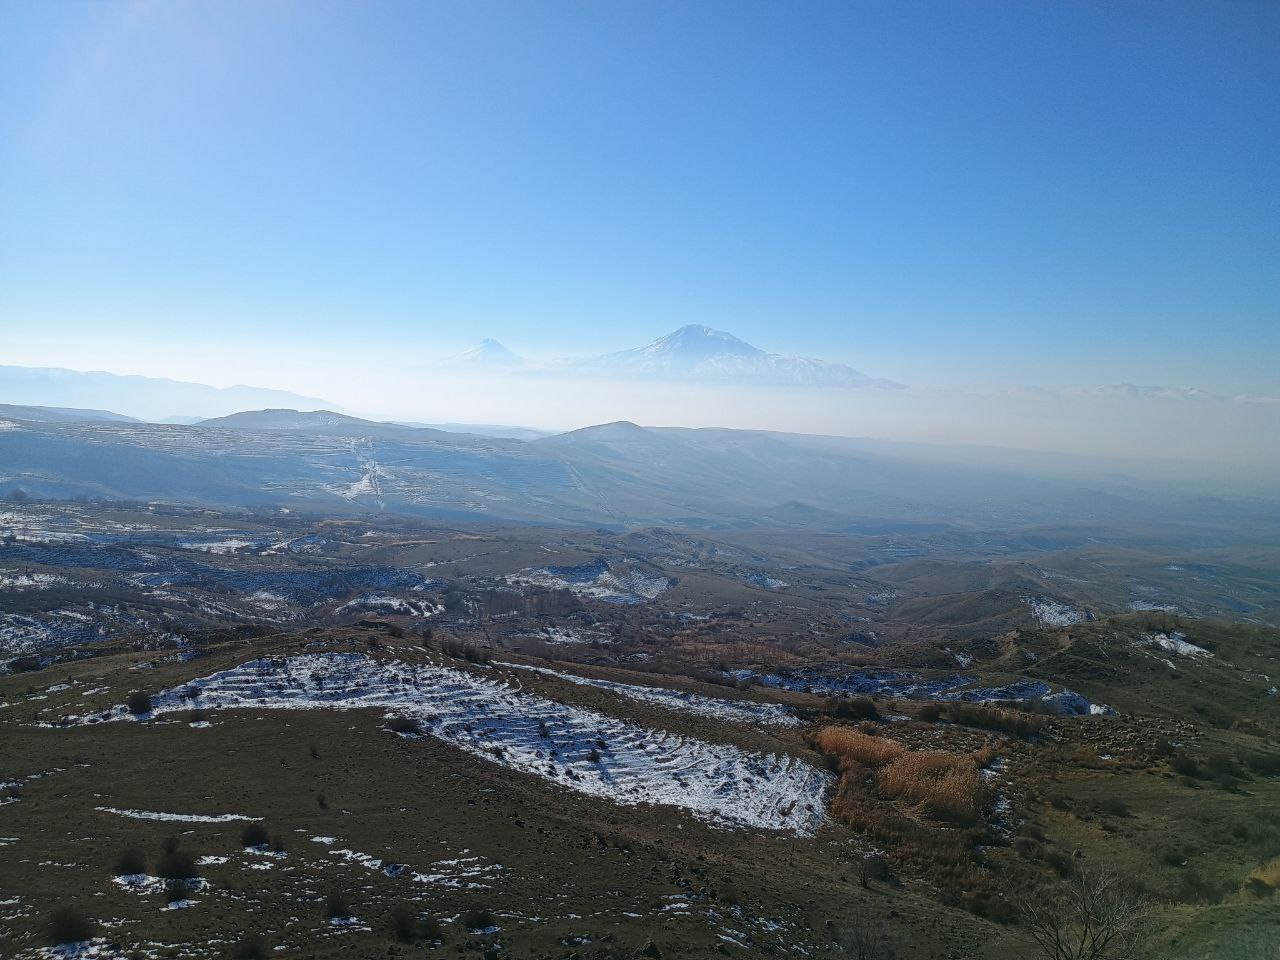 Auf dem Foto befindet sich der Berg Ararat, der heilige Berg der Bewohner Armeniens. (Themenbild/Symbolbild)